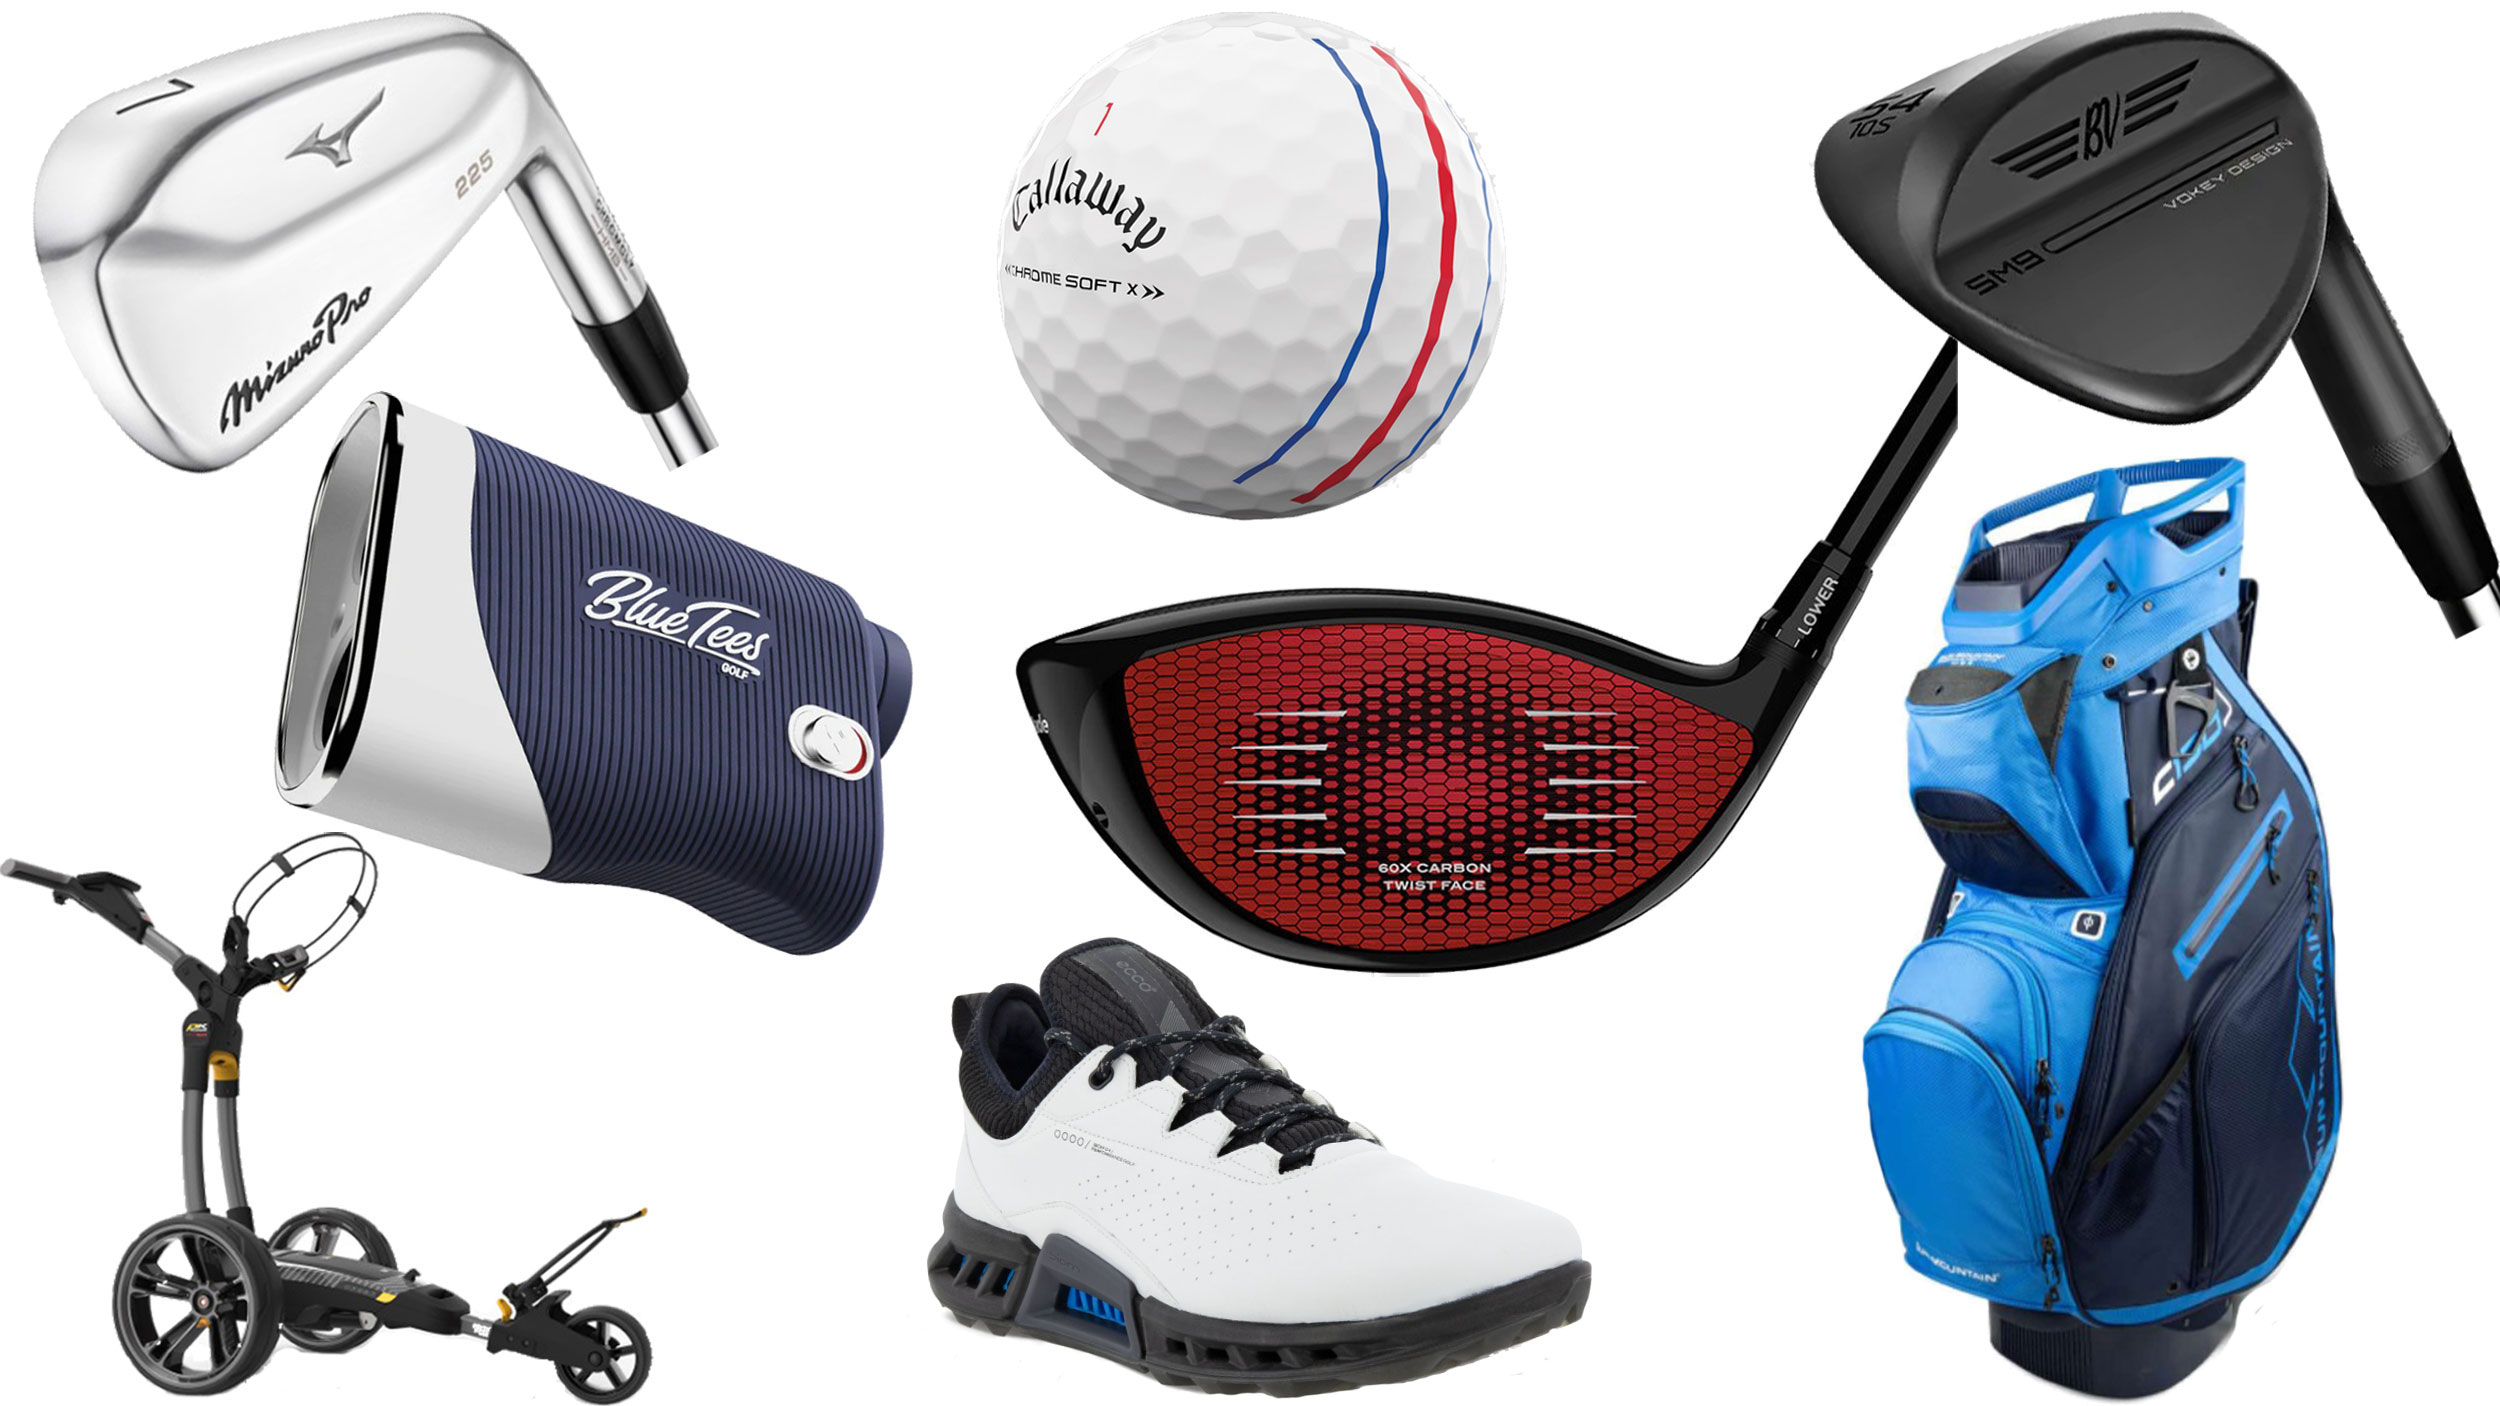 Buy Golf Equipment & Golf Gear Online